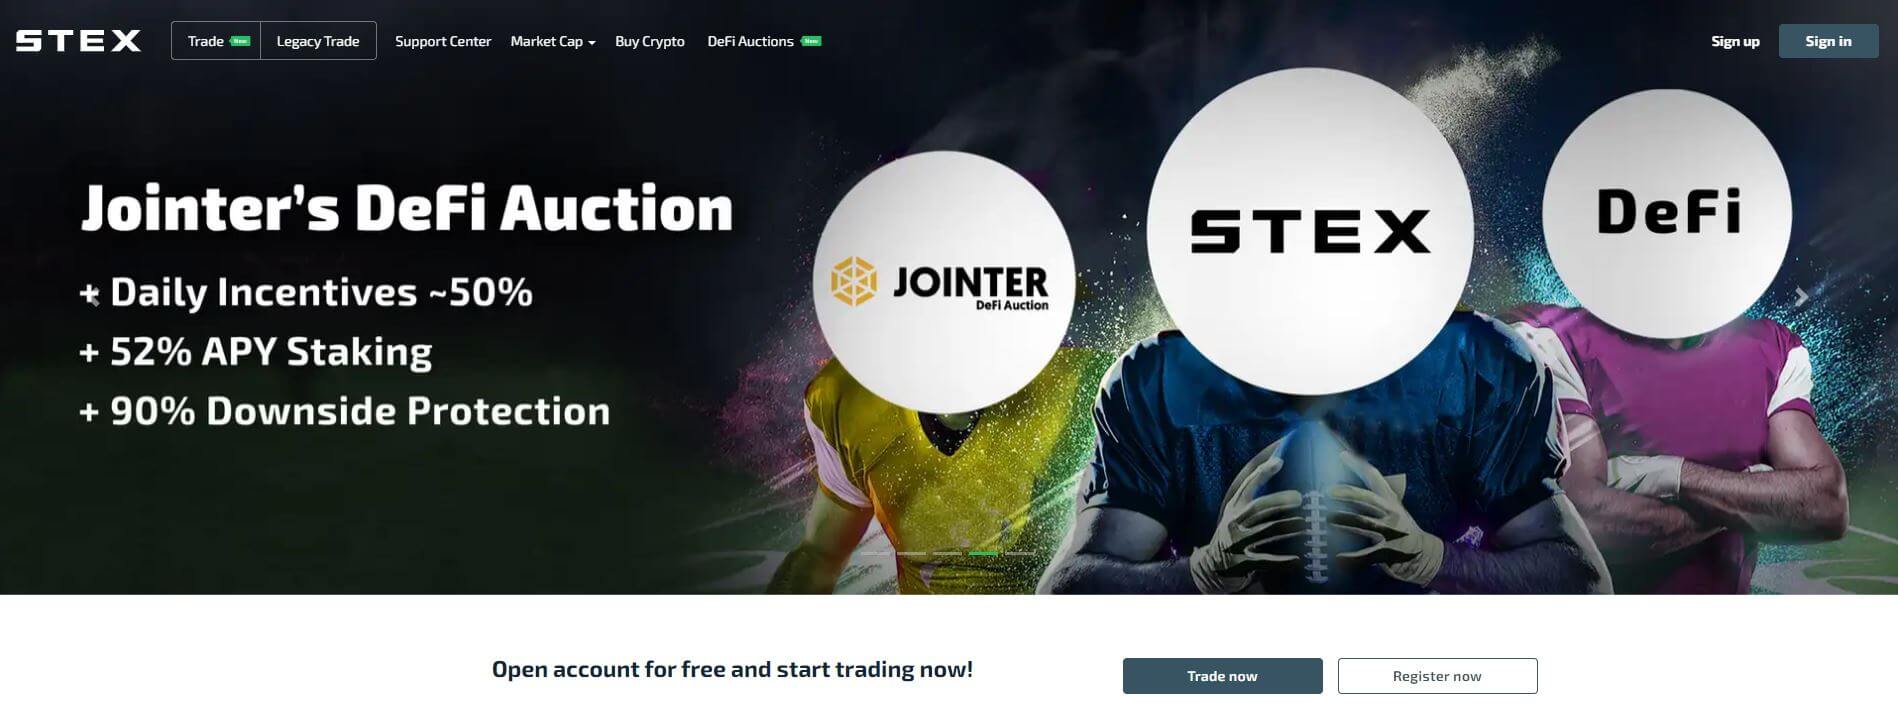 STEX.COM Homepage